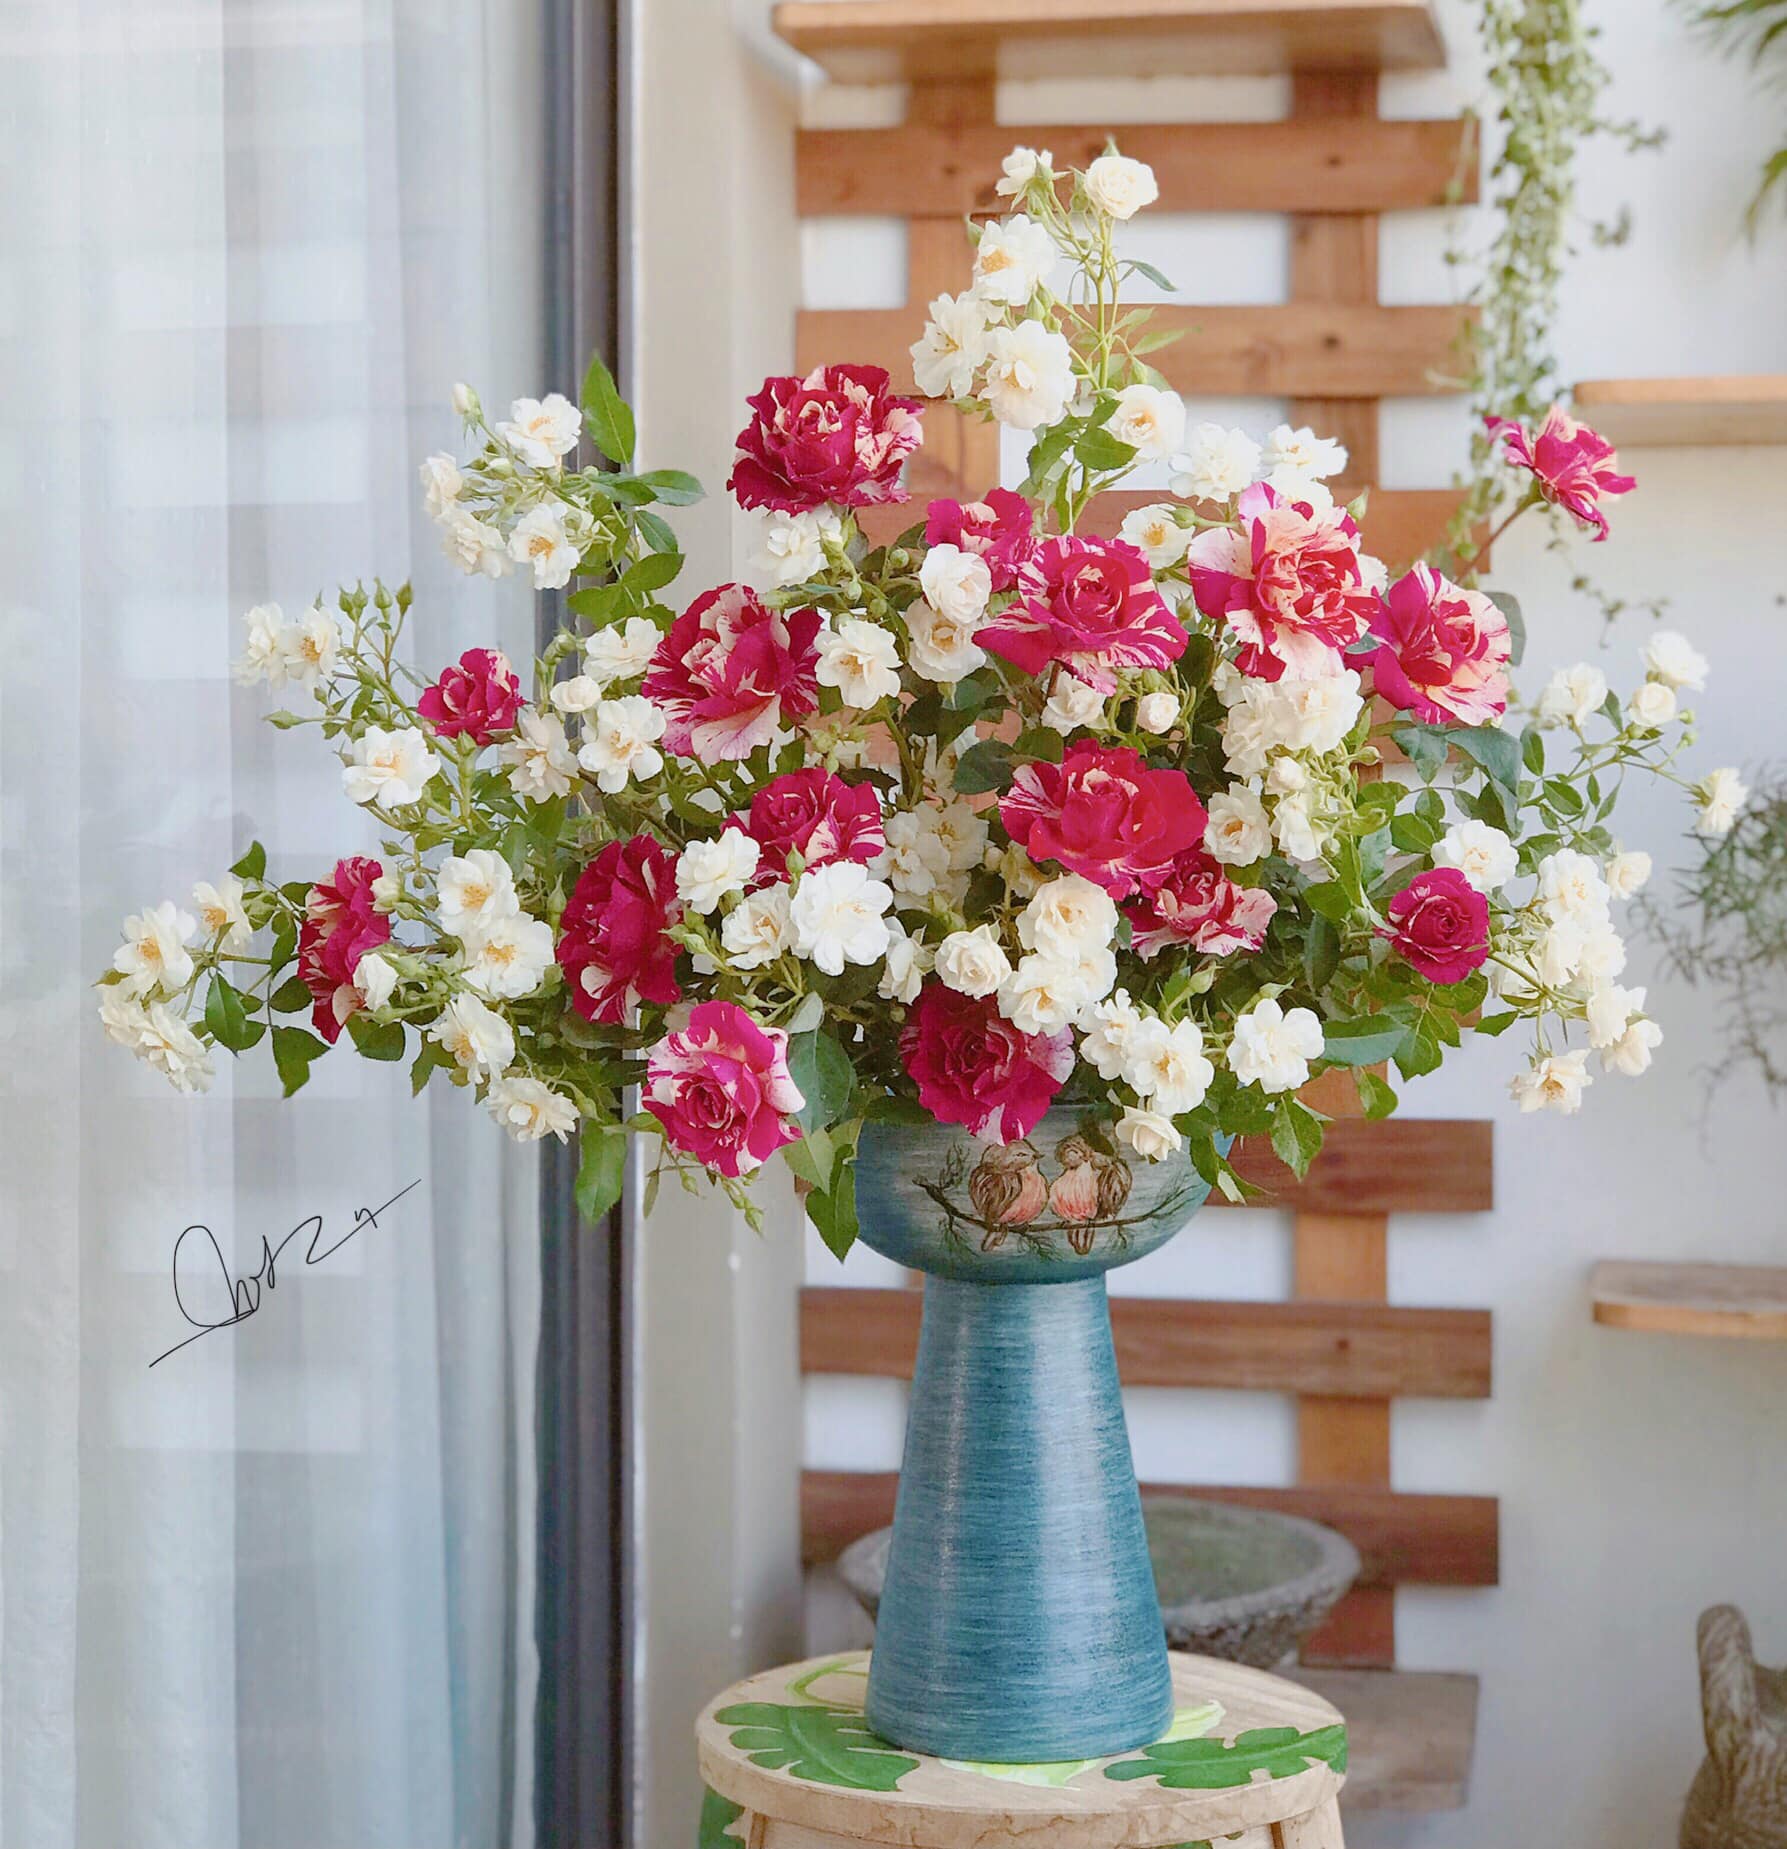 Bà mẹ 2 con sở hữu BST cắm hoa siêu đẹp, chia sẻ cách chọn bình hoa phù hợp với từng không gian nhà - Ảnh 5.